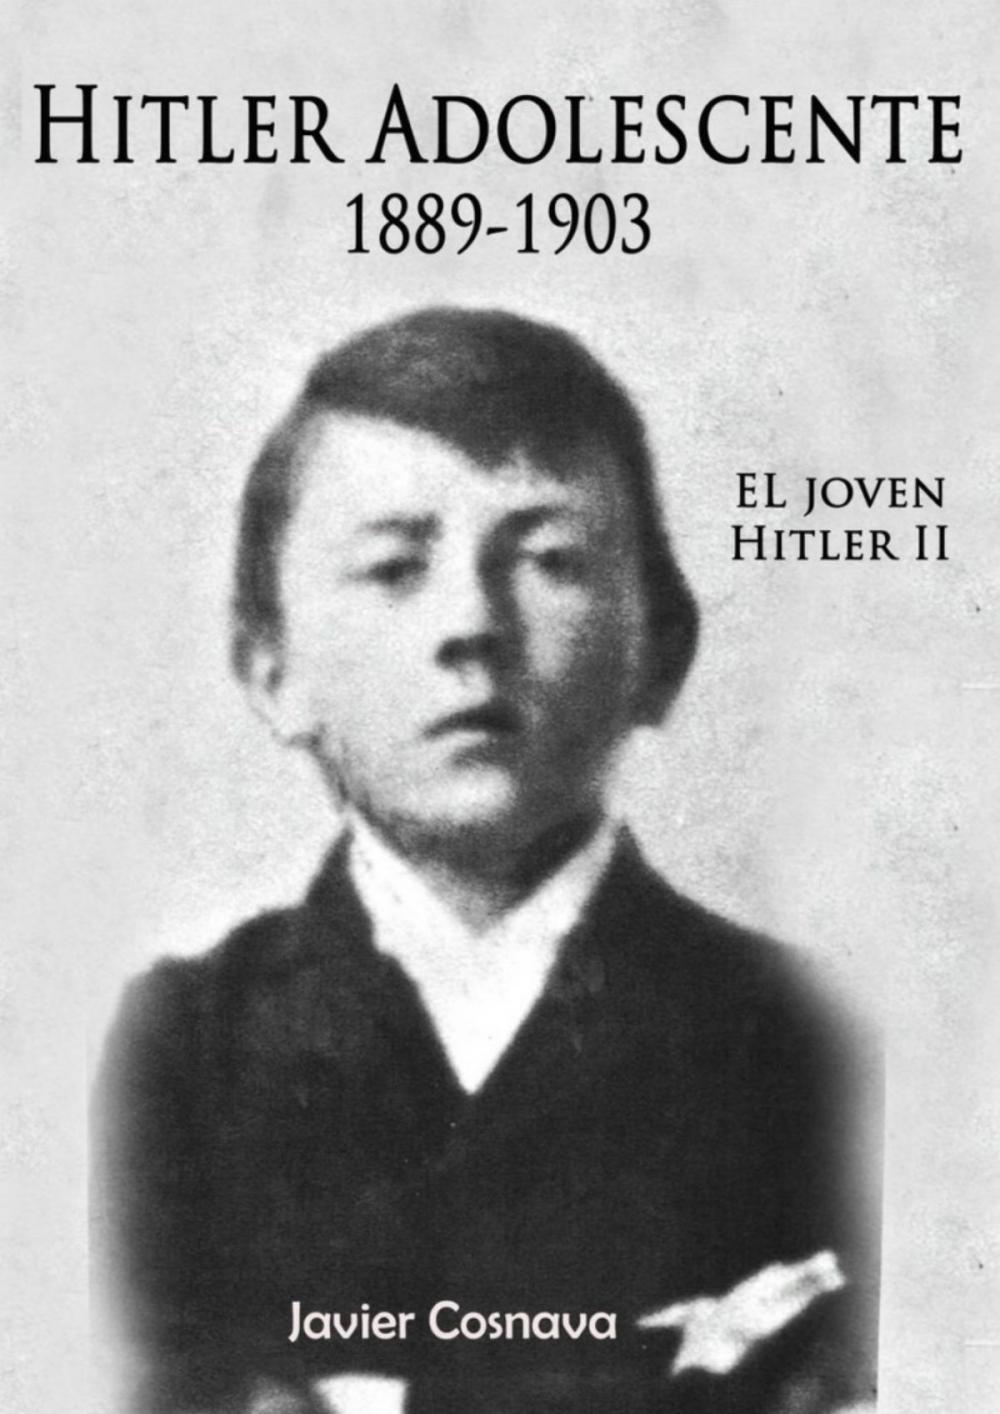 Big bigCover of El Joven Hitler 2 (Hitler adolescente)